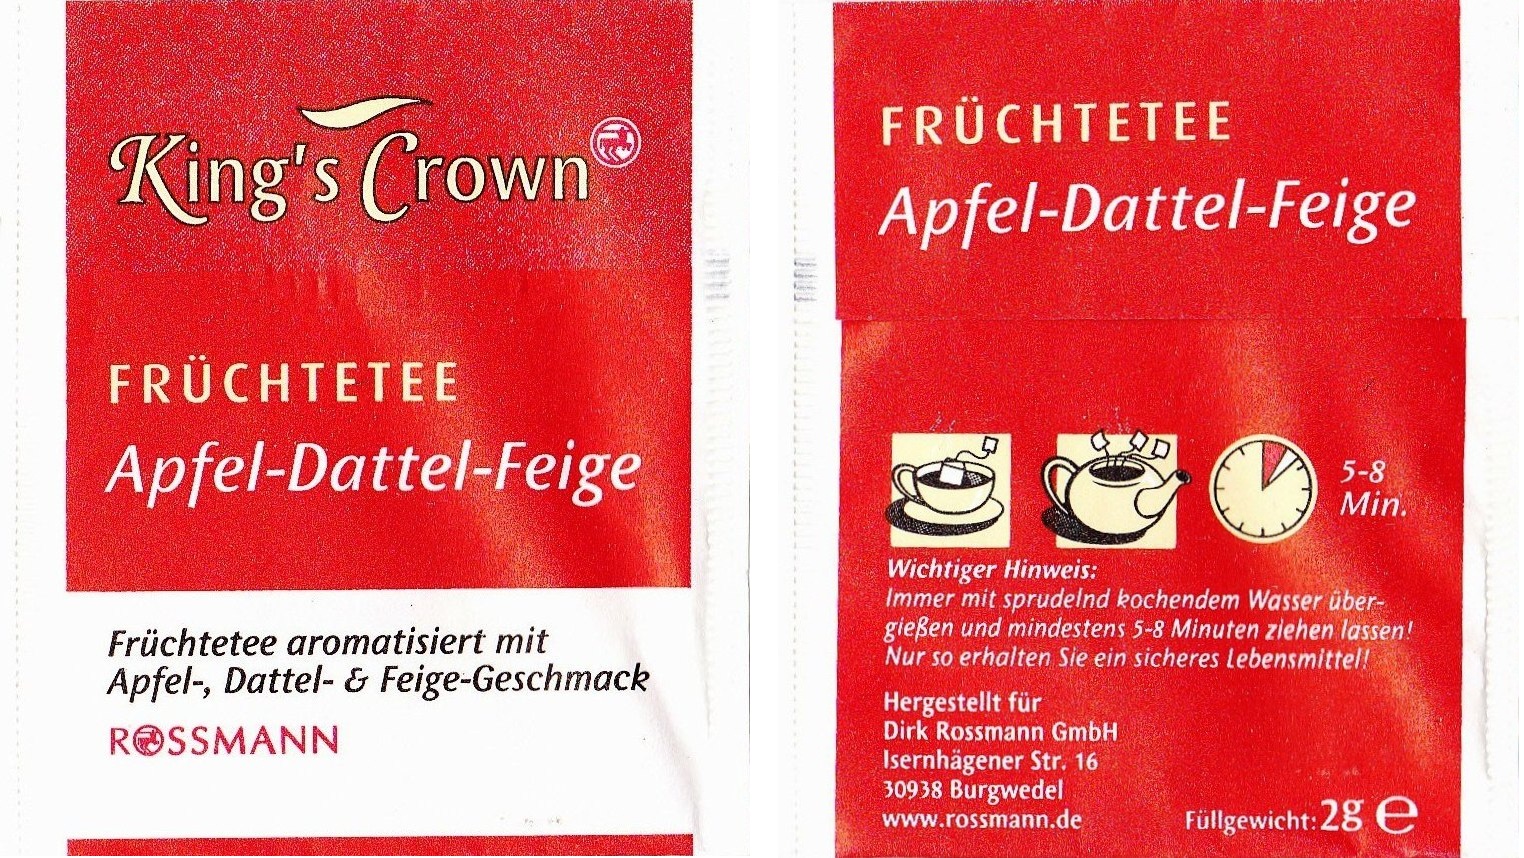 Rossmann - King´s Crown - Fruchtetee - Apfel, Dattel, Feige